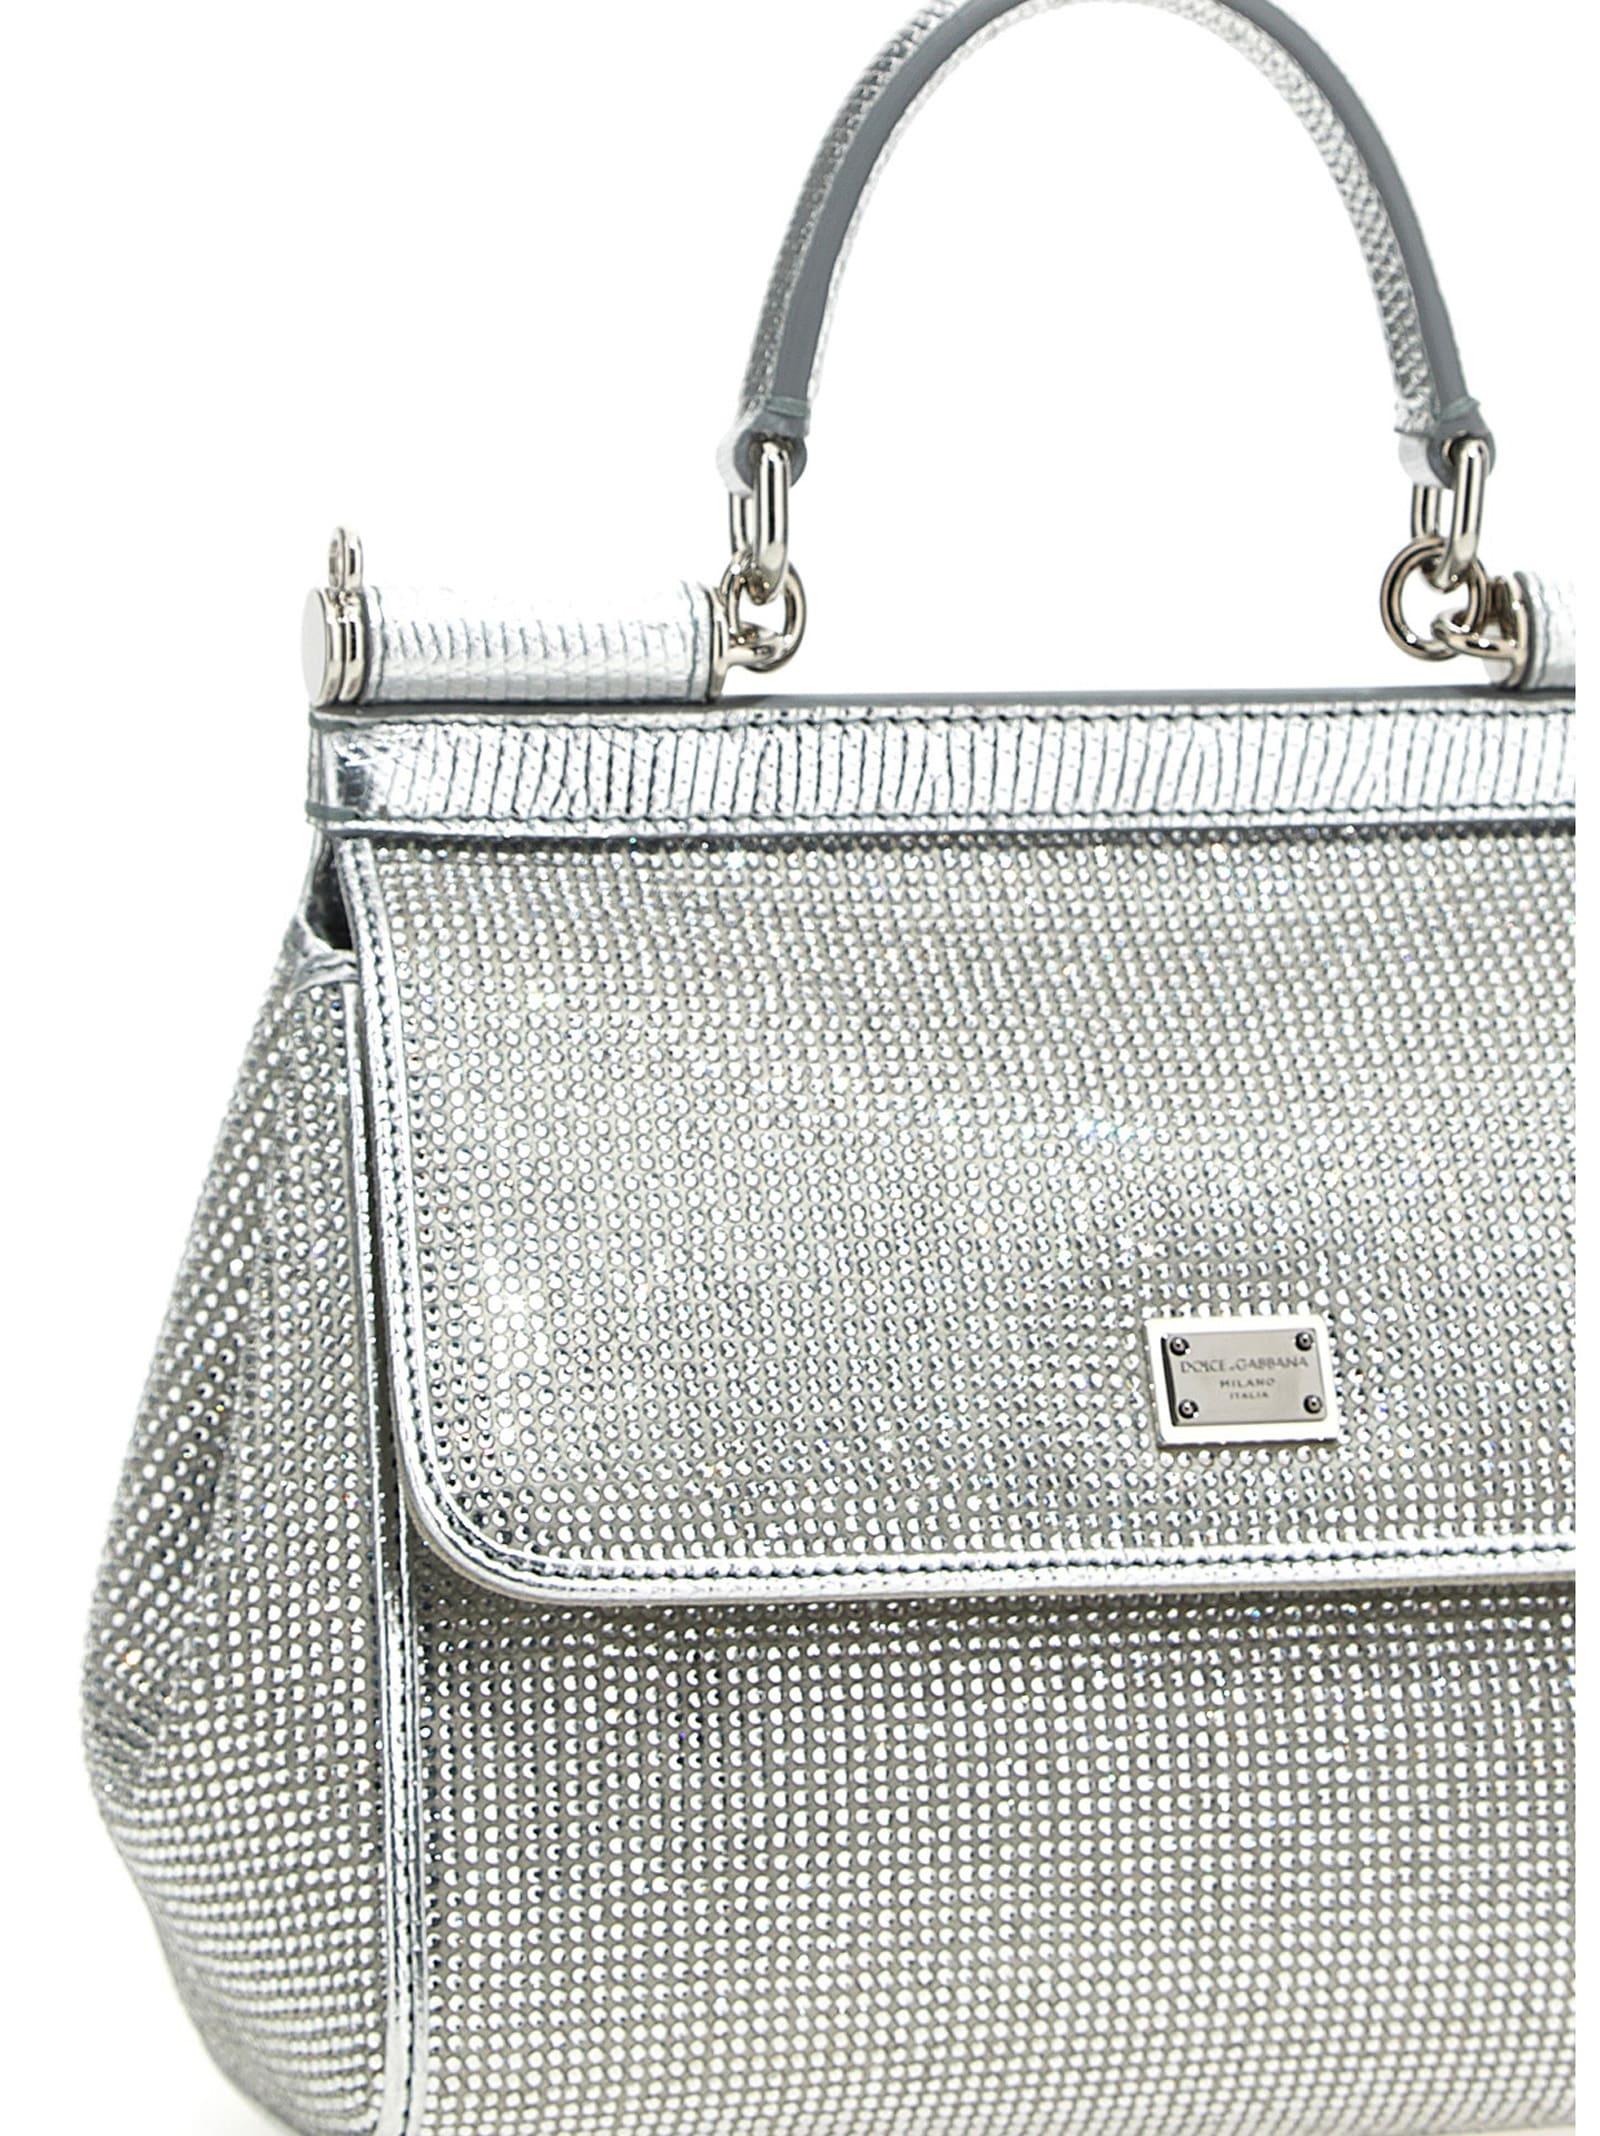 Dolce & Gabbana Medium Handbag sicily in Gray